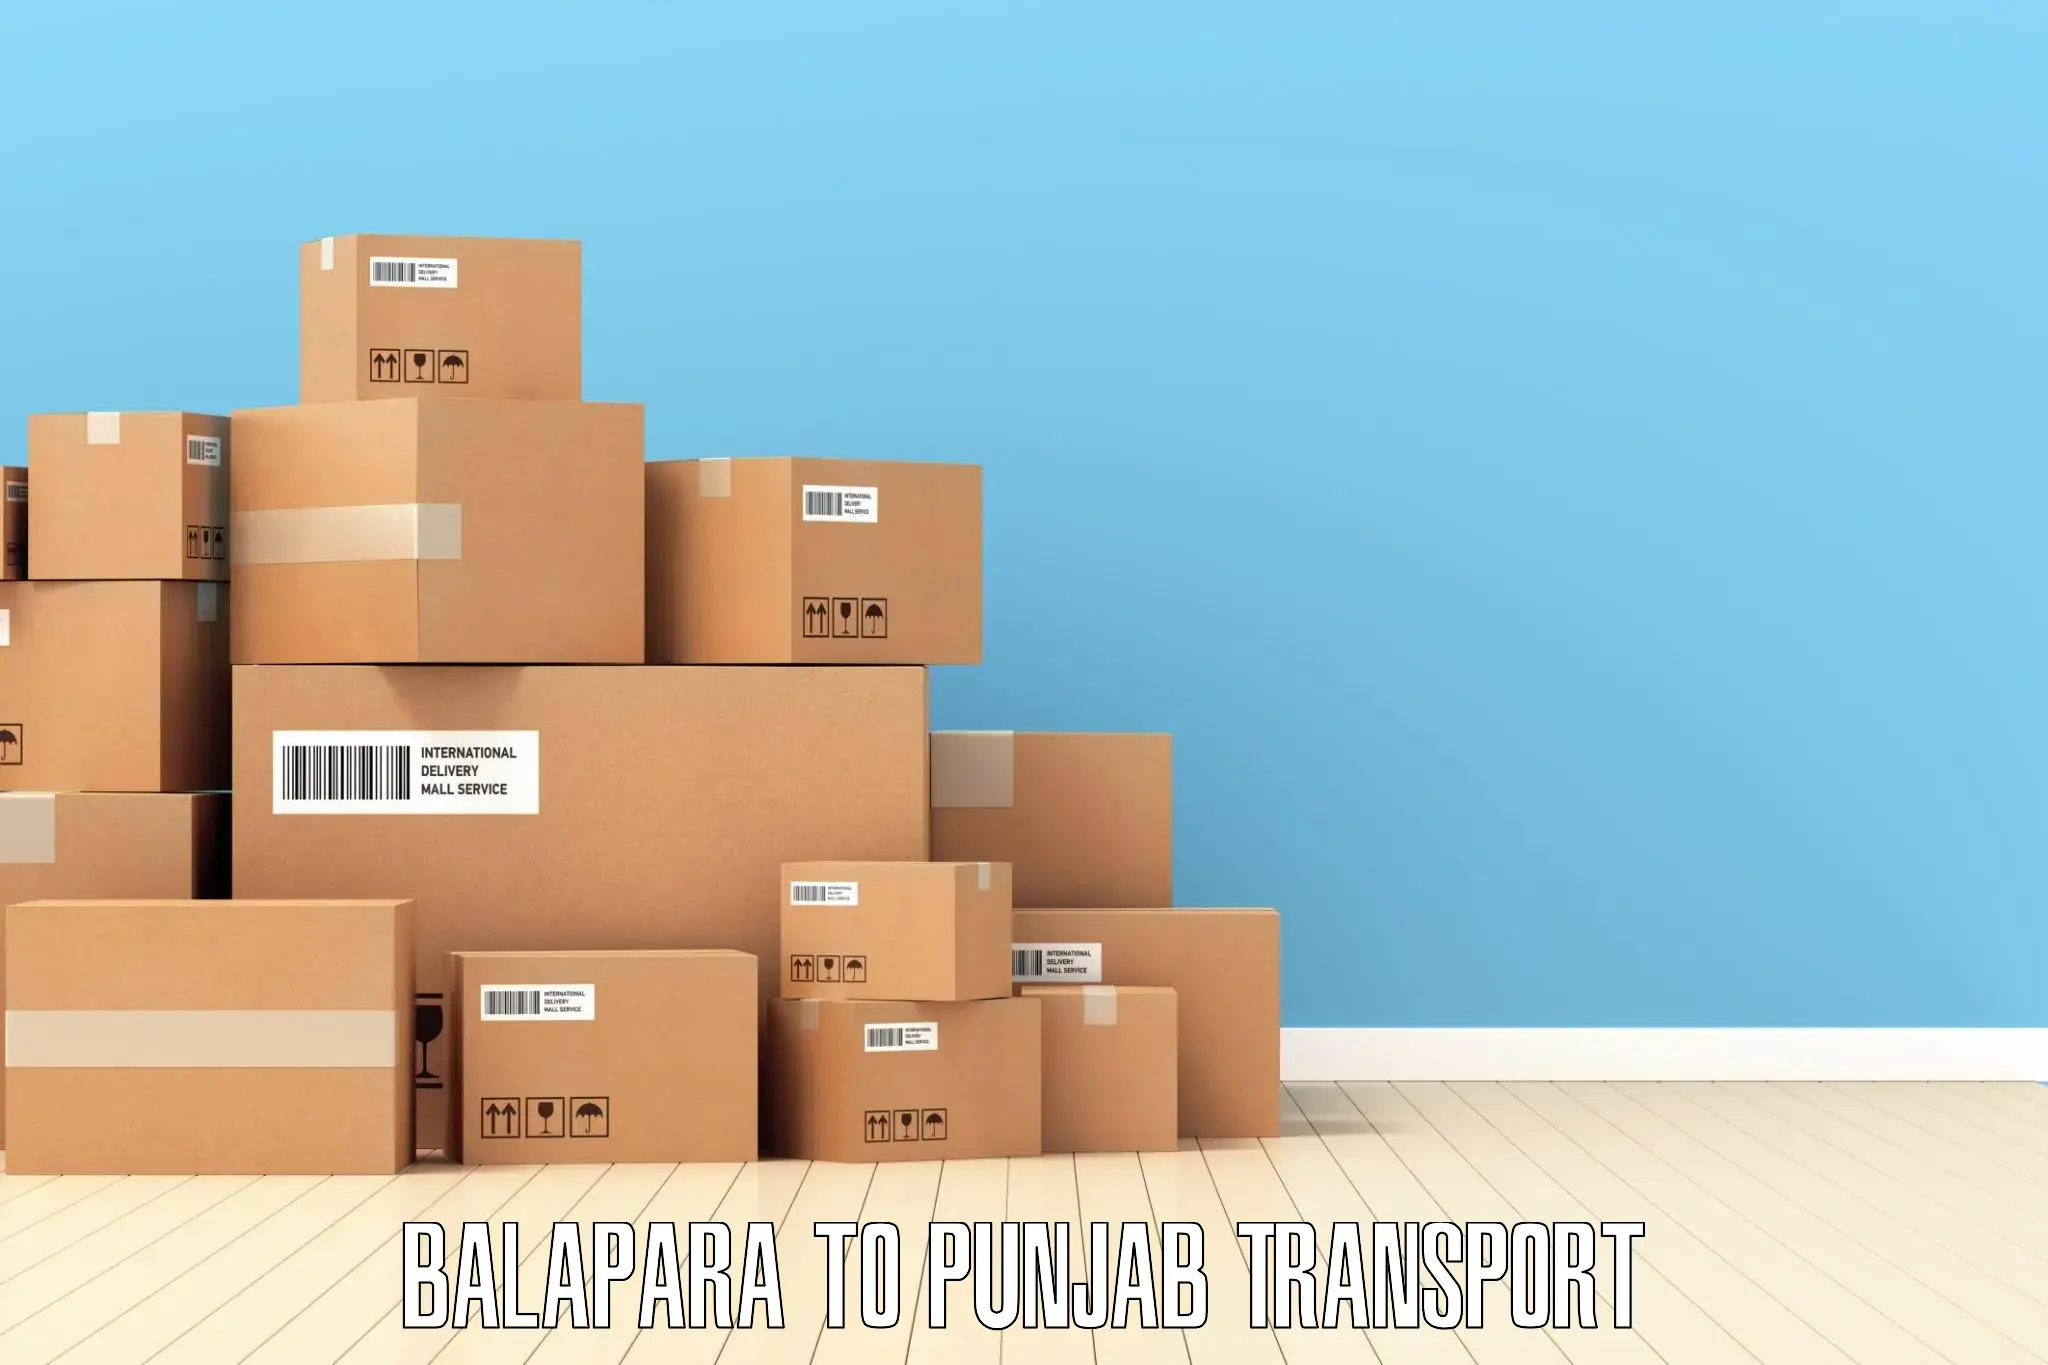 Cargo transport services Balapara to Punjab